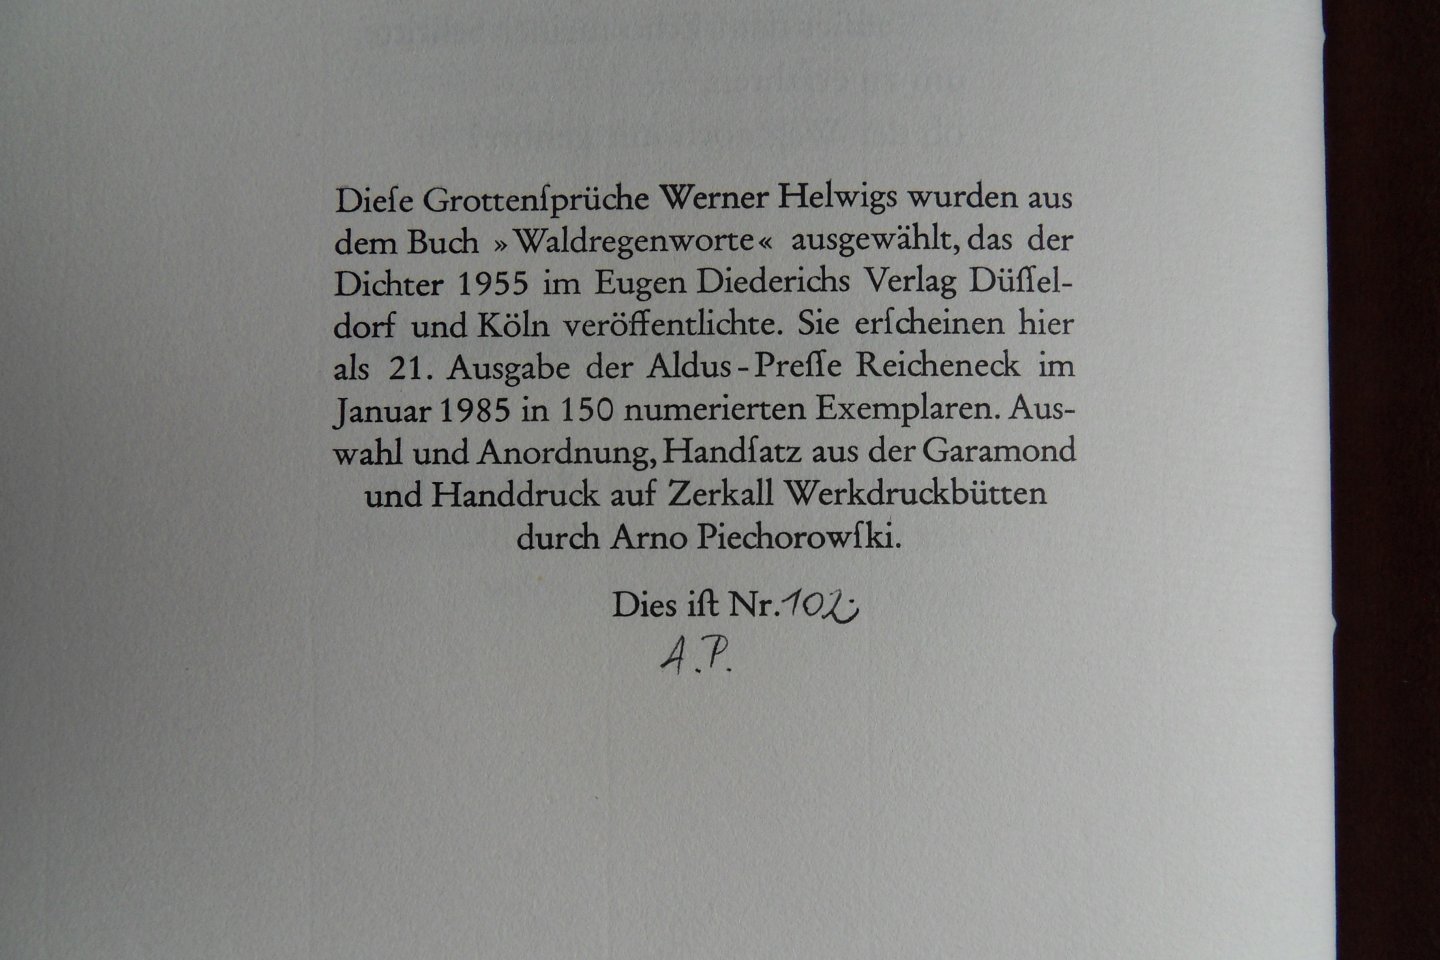 Helwig, Werner. - Grottensprüche. [ Genummerde oplage 102 / 150 ].